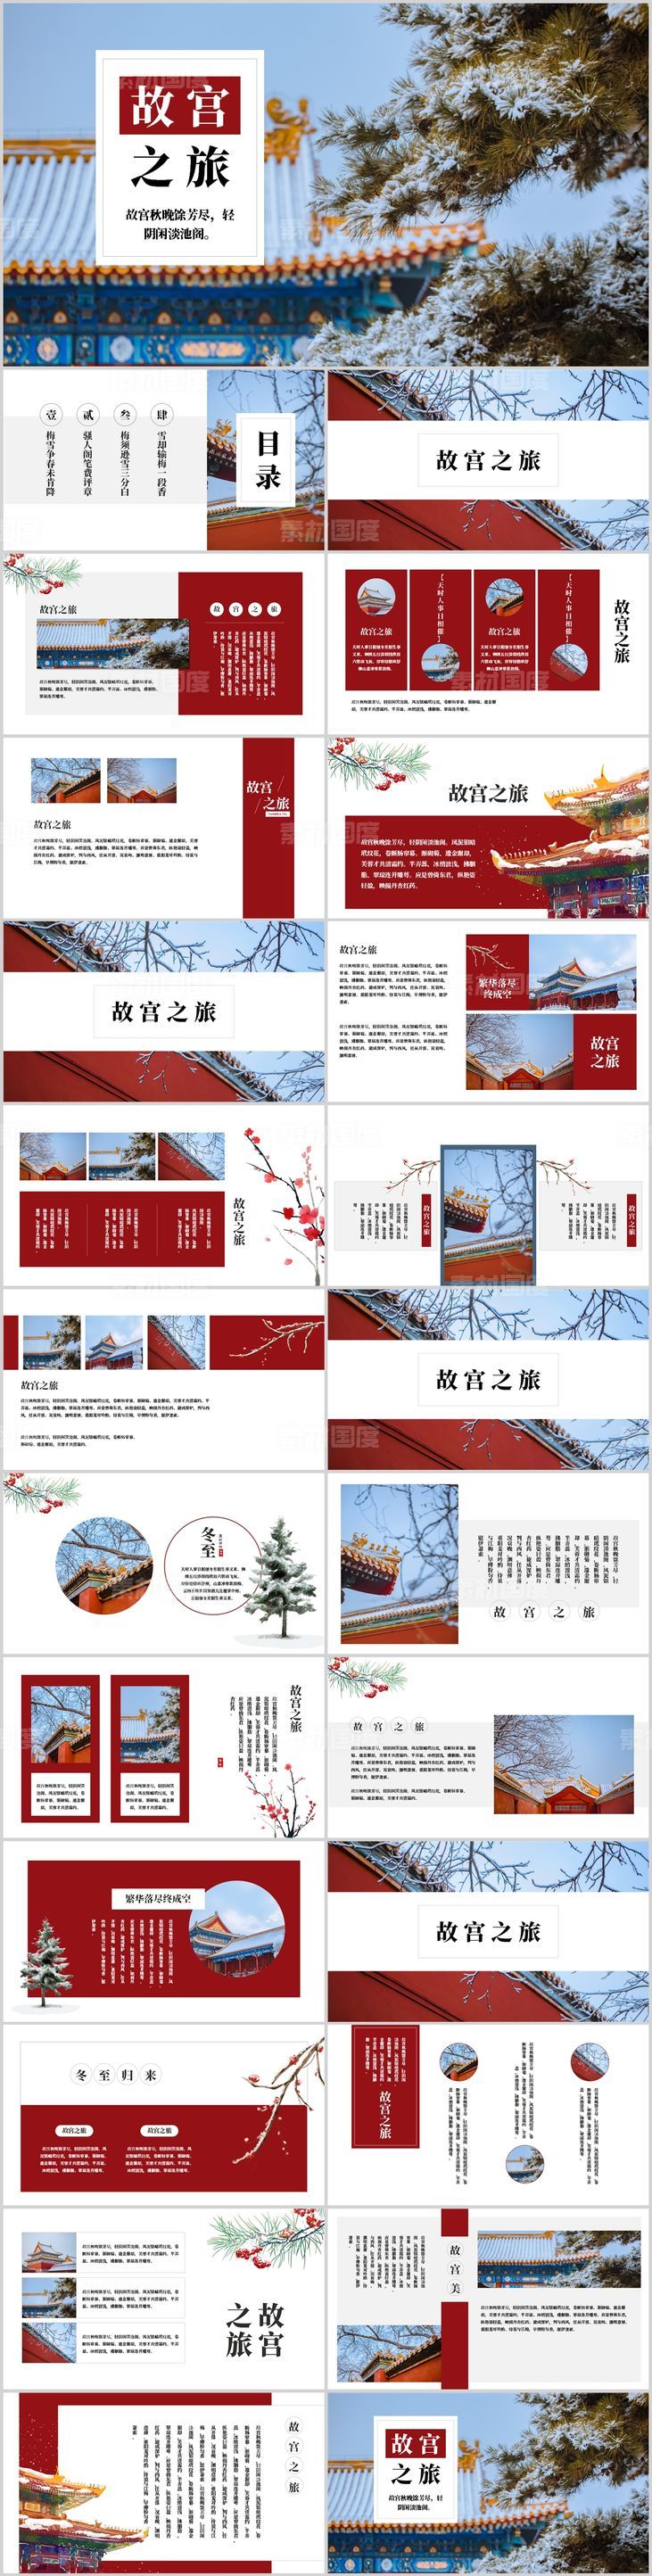 创意杂志风故宫之旅旅行画册PPT模板